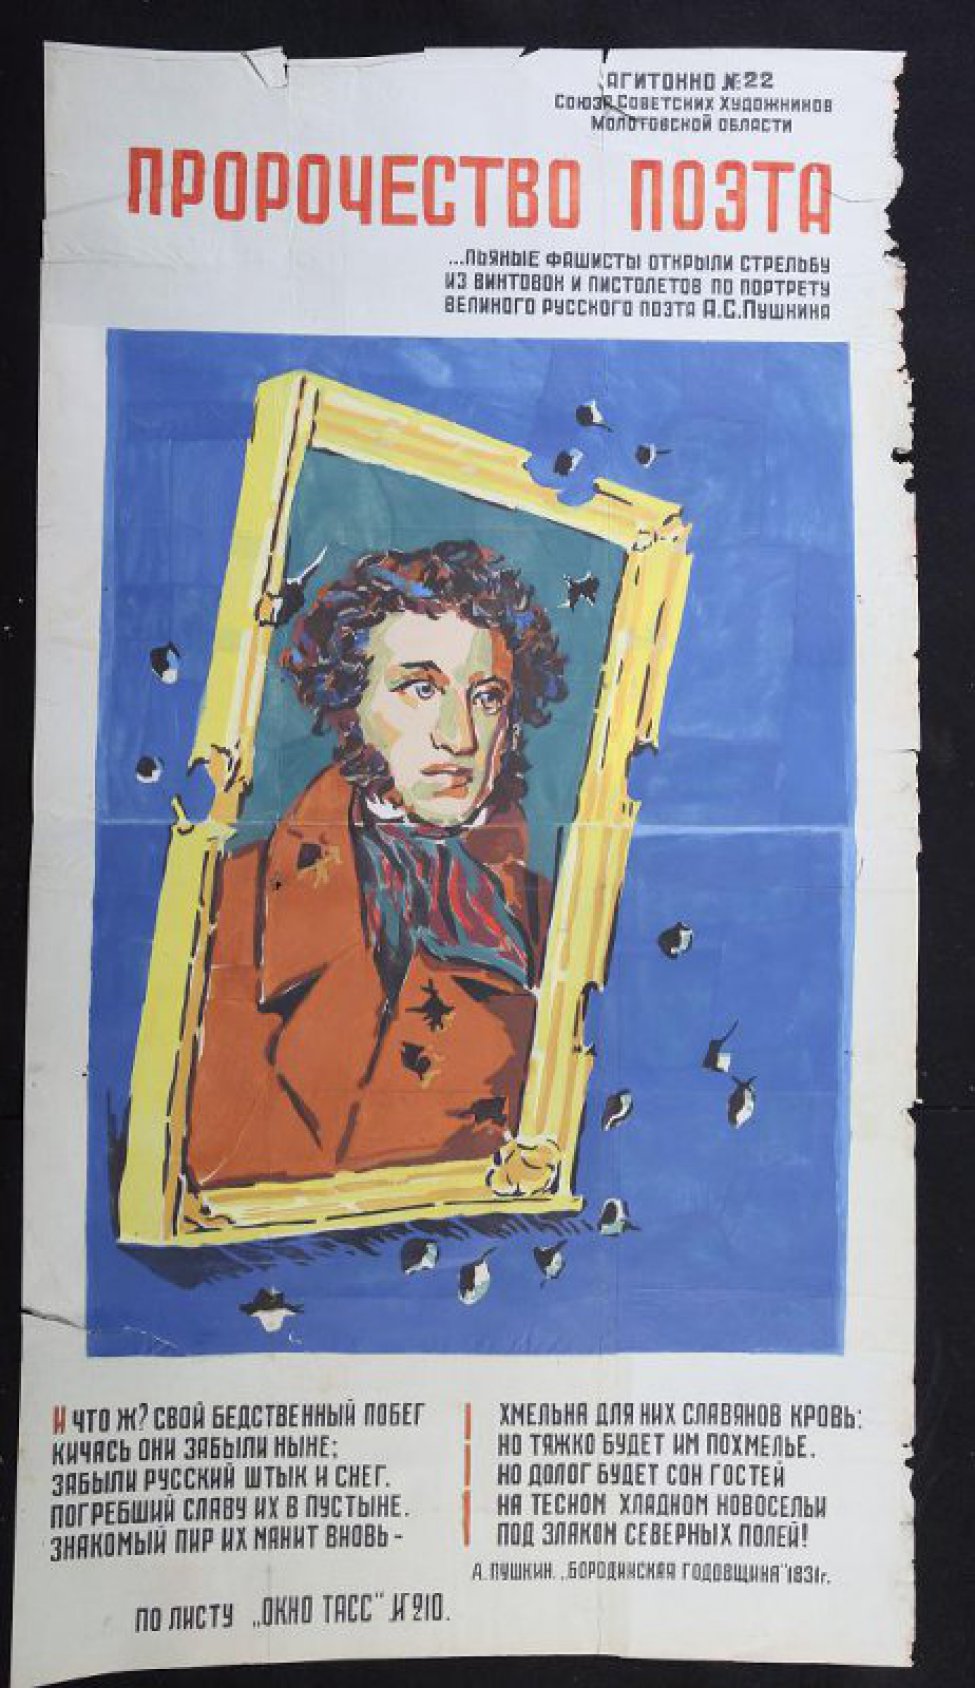 Изображено: портрет А.С. Пушкина, изрешеченный пулями, внизу текст на стихи Пушкина: "И что ж? Свой бедственный побег, кичась, они забыли ныне..."